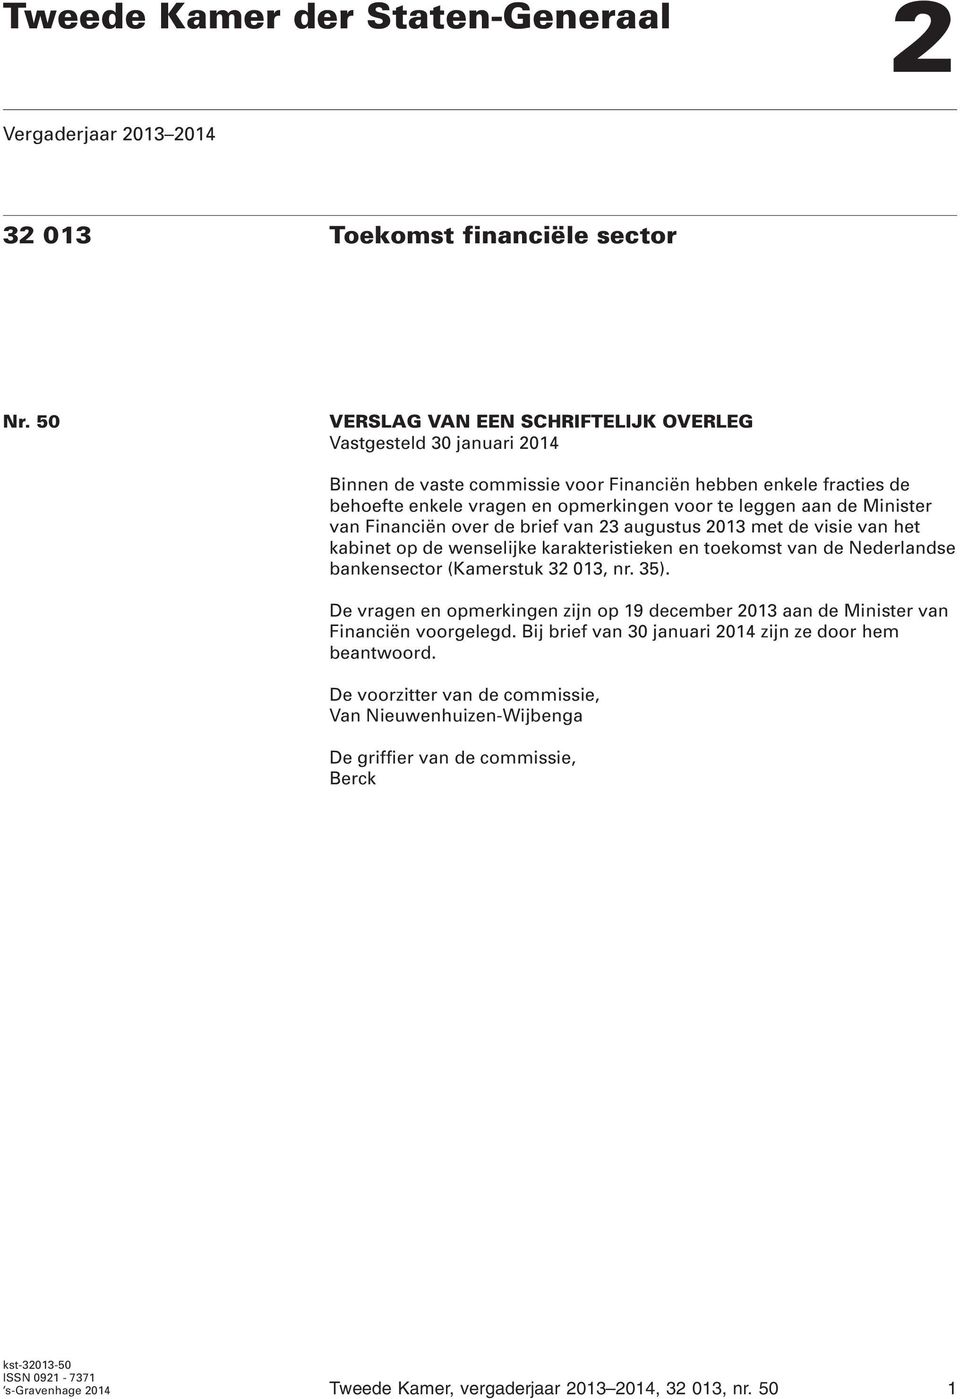 Minister van Financiën over de brief van 23 augustus 2013 met de visie van het kabinet op de wenselijke karakteristieken en toekomst van de Nederlandse bankensector (Kamerstuk 32 013, nr. 35).